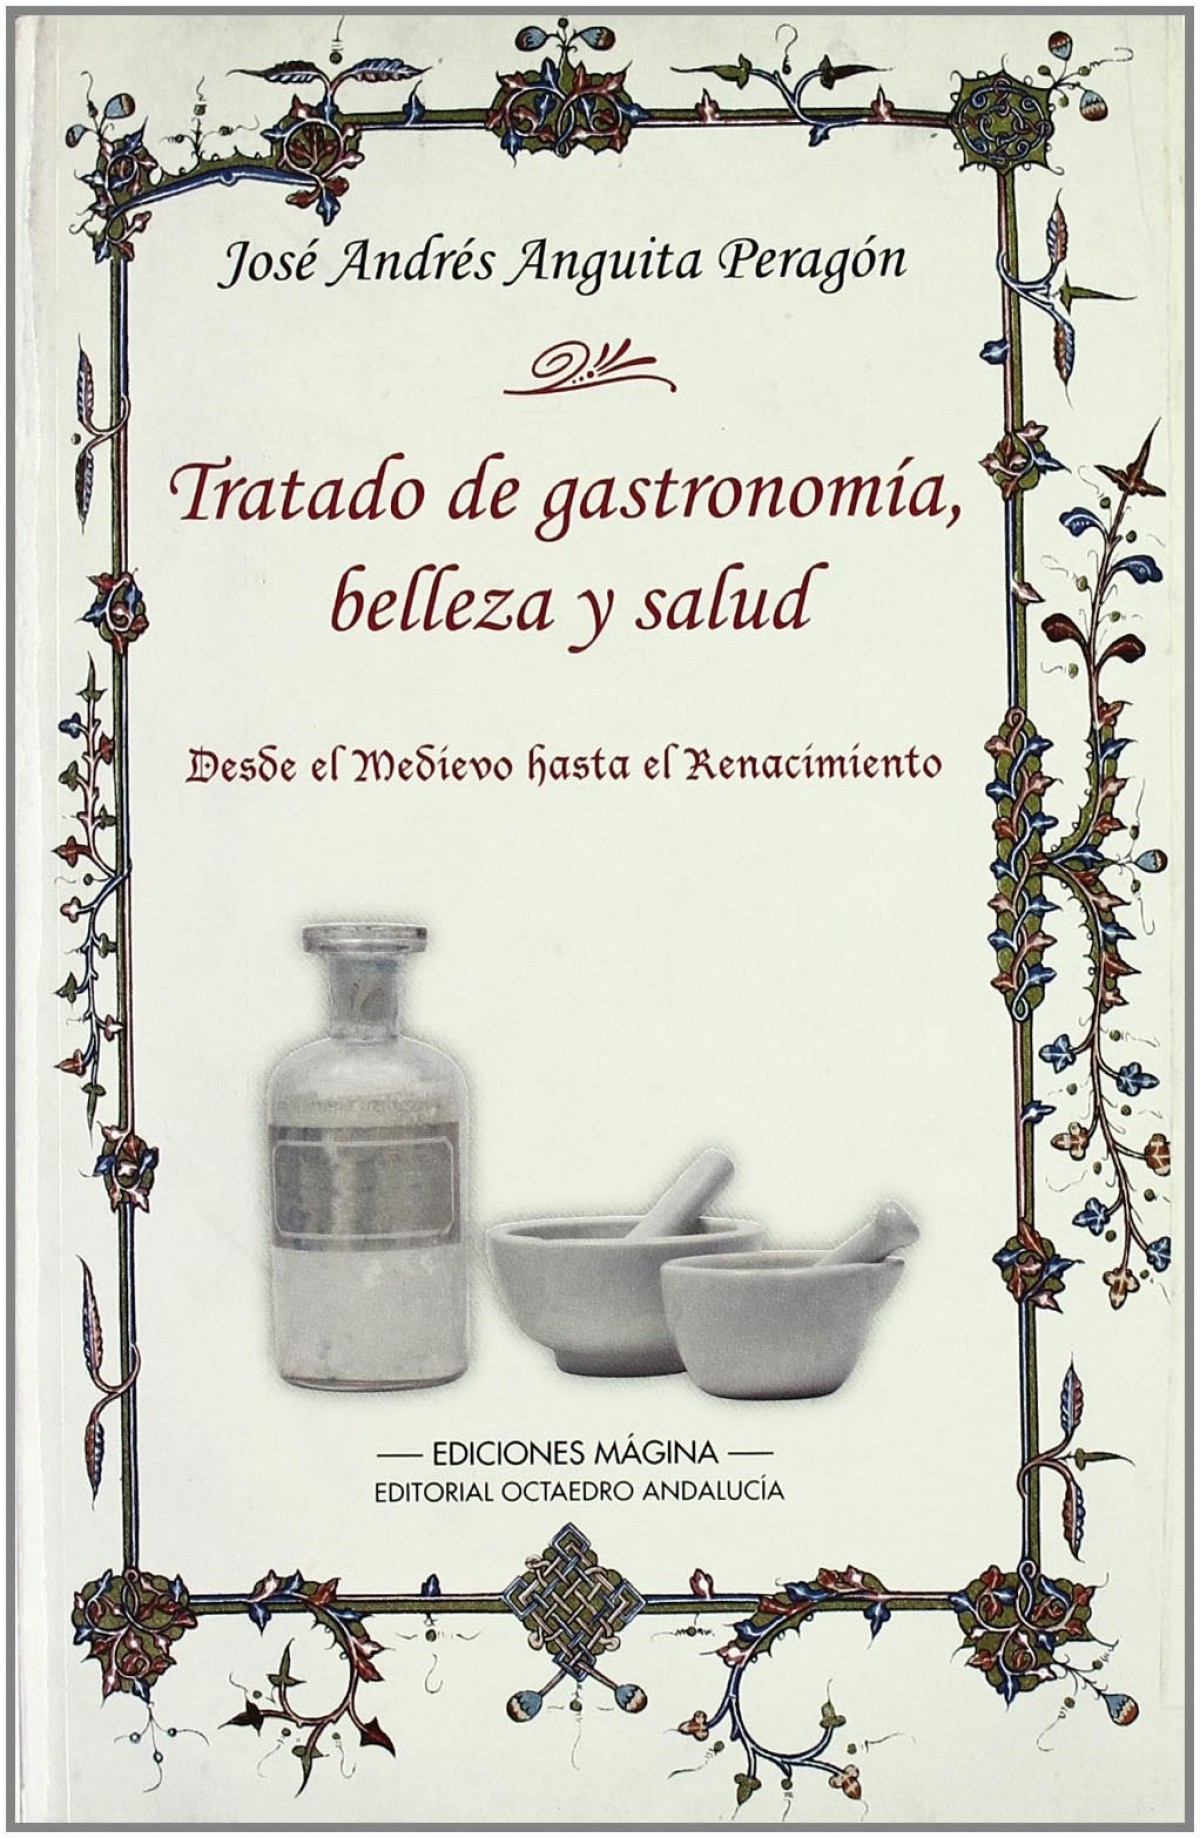 Tratado de gastronomia, belleza y salud - Jose Andres Anguita Peragon